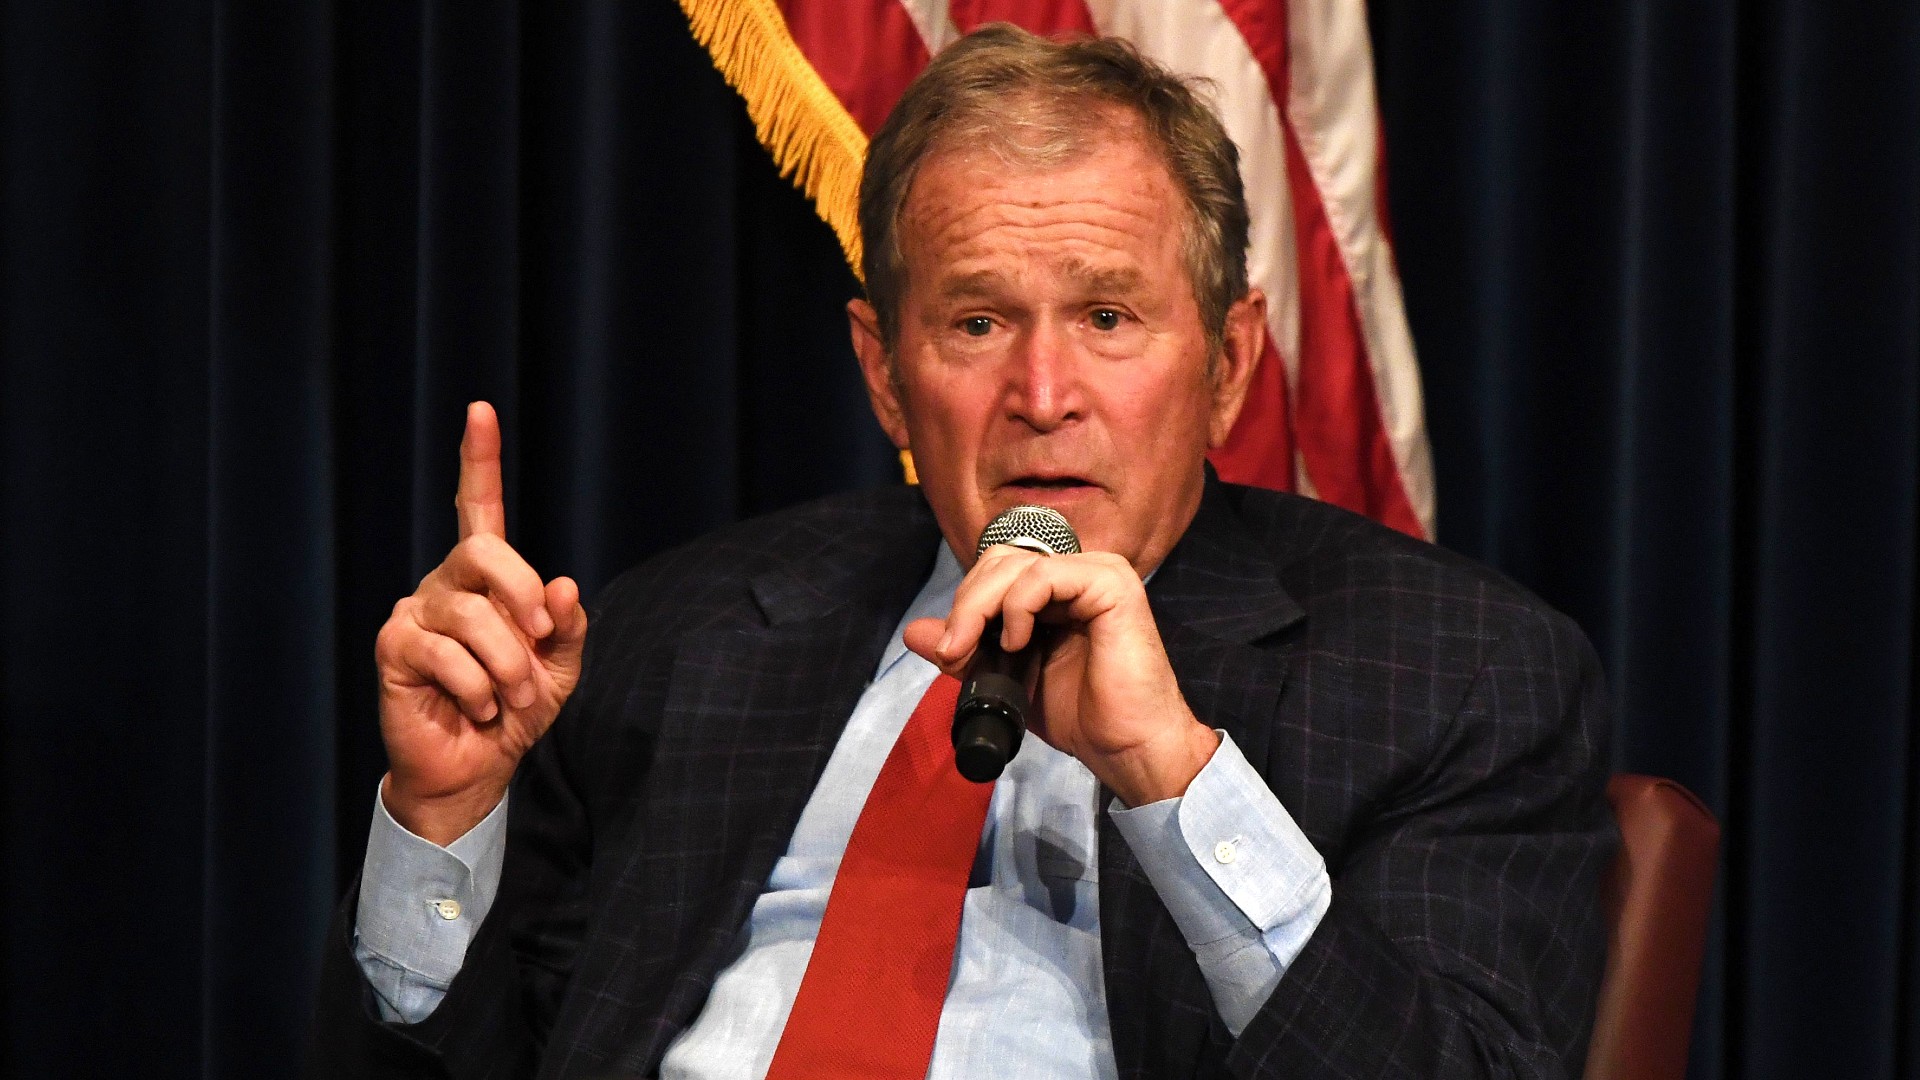 Ir al Video El expresidente republicano Bush felicita a Biden y asegura que el resultado electoral es "claro"